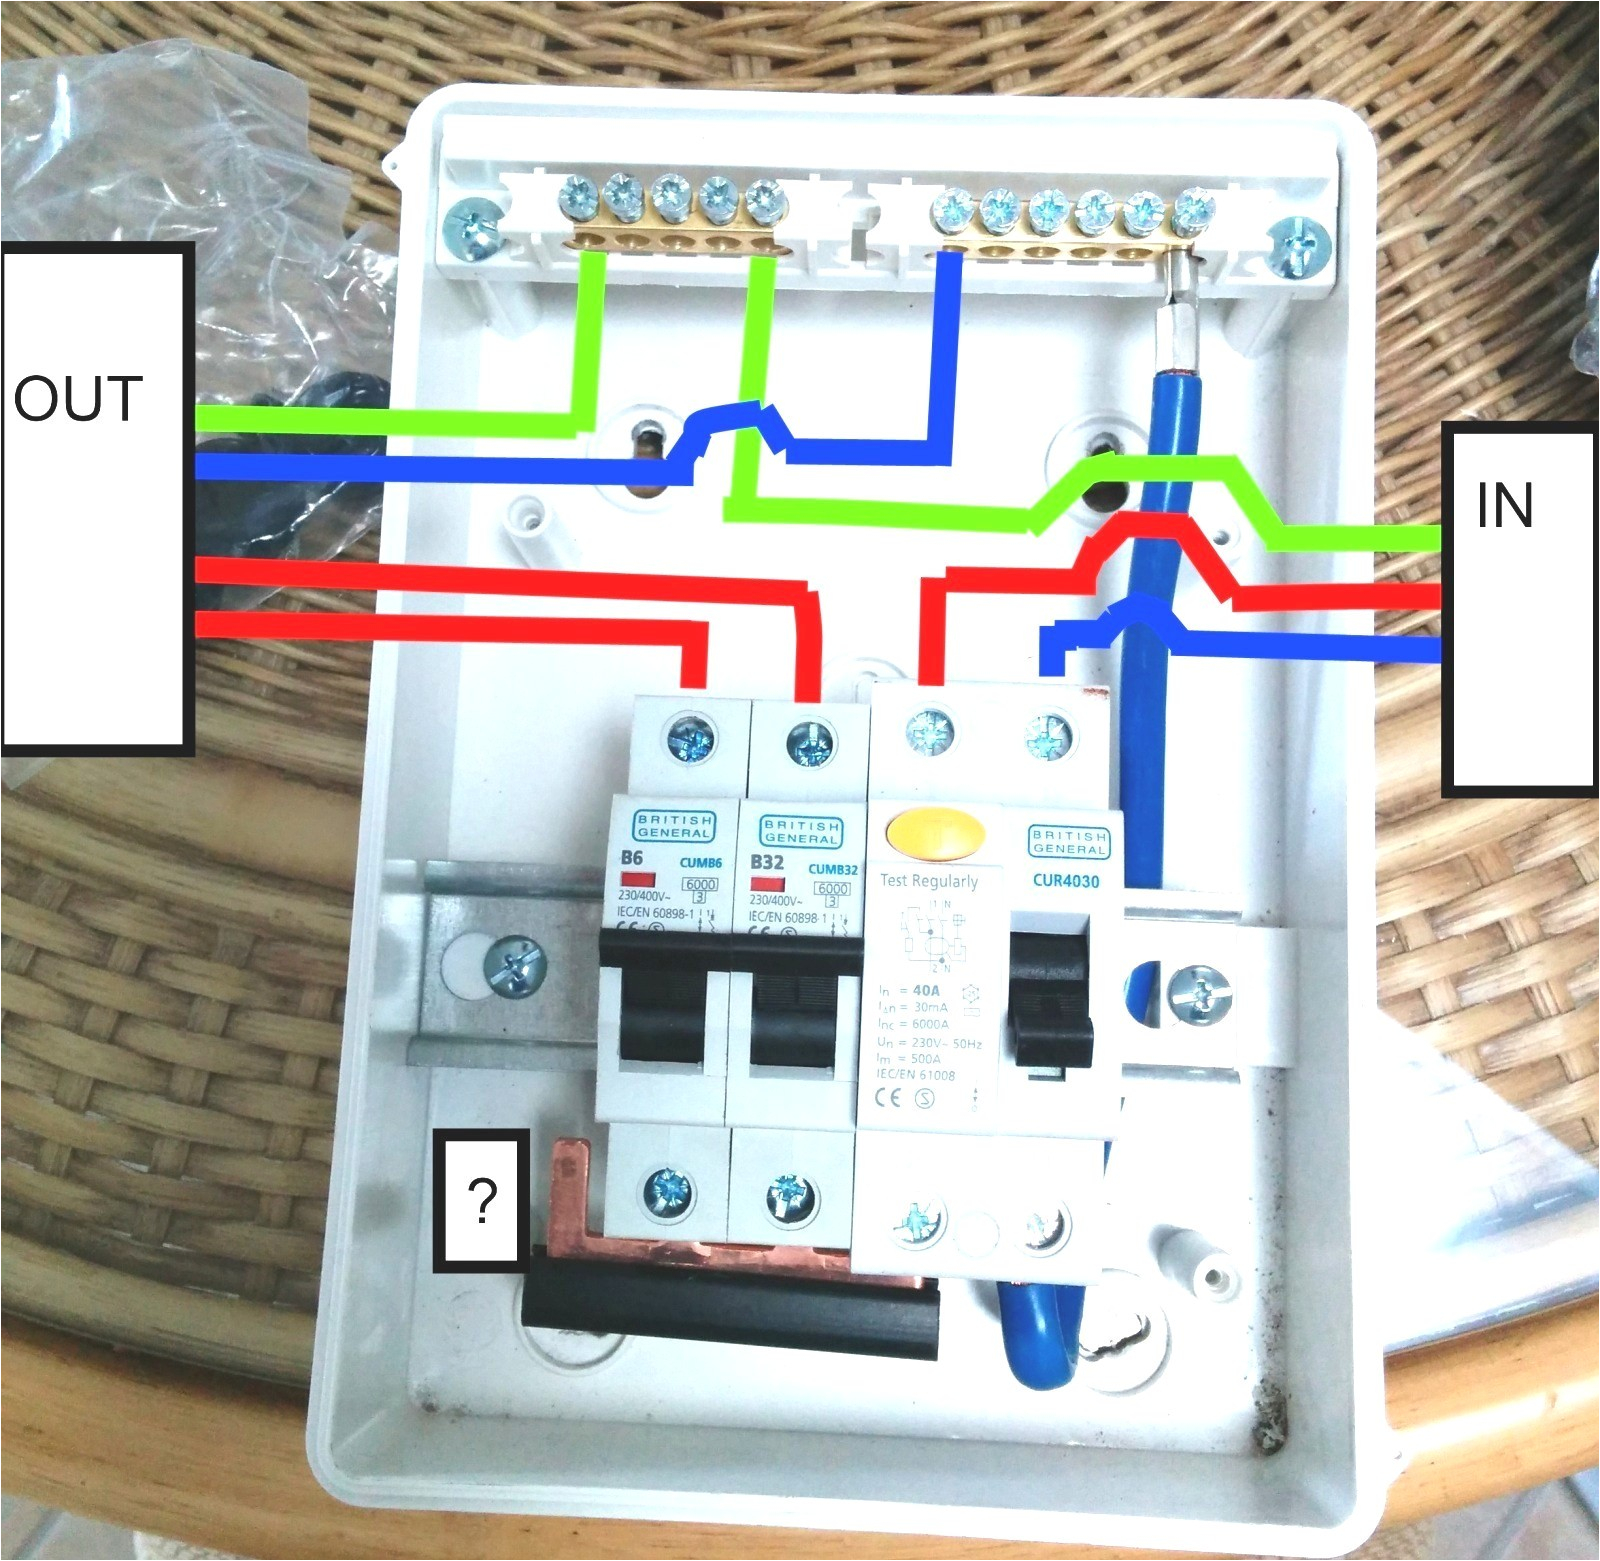 lap garage unit wiring diagram wiring diagram completed lap garage unit wiring diagram